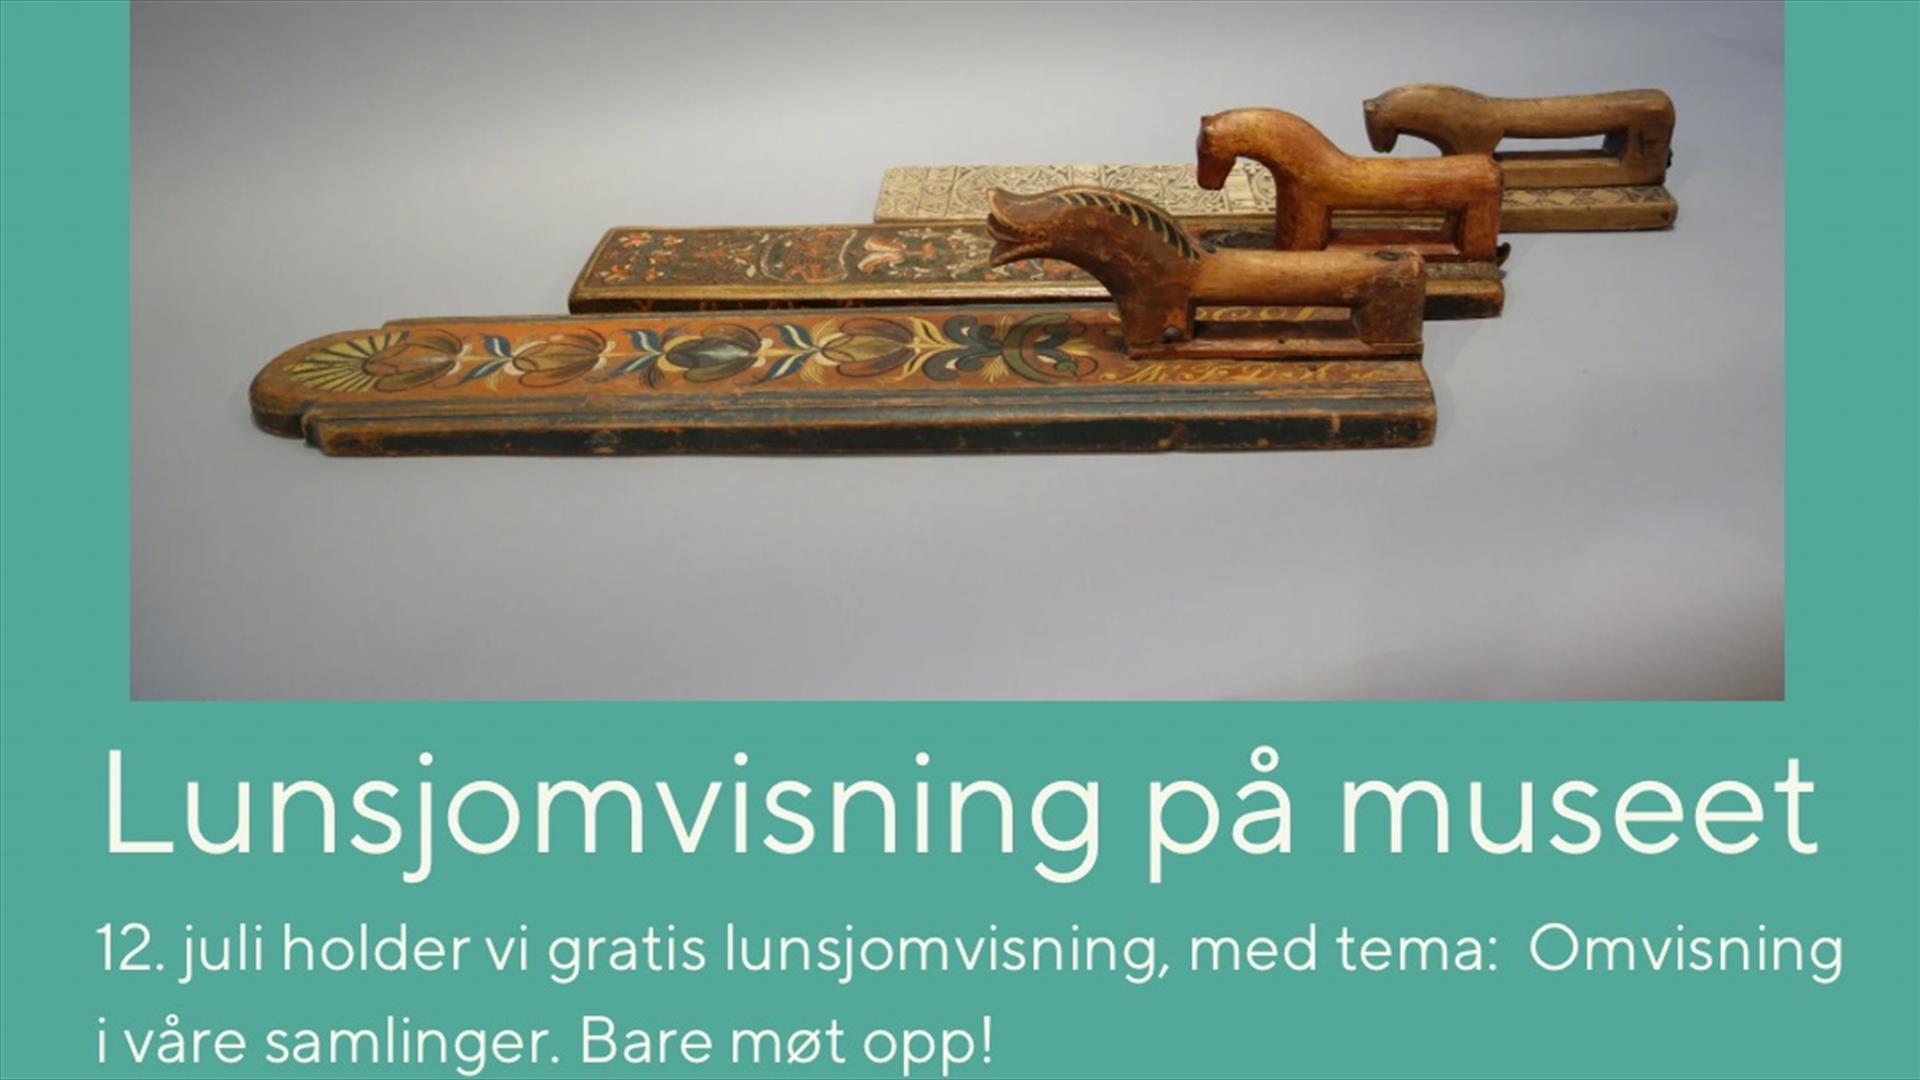 Bilde fra Drammens museums Instagram